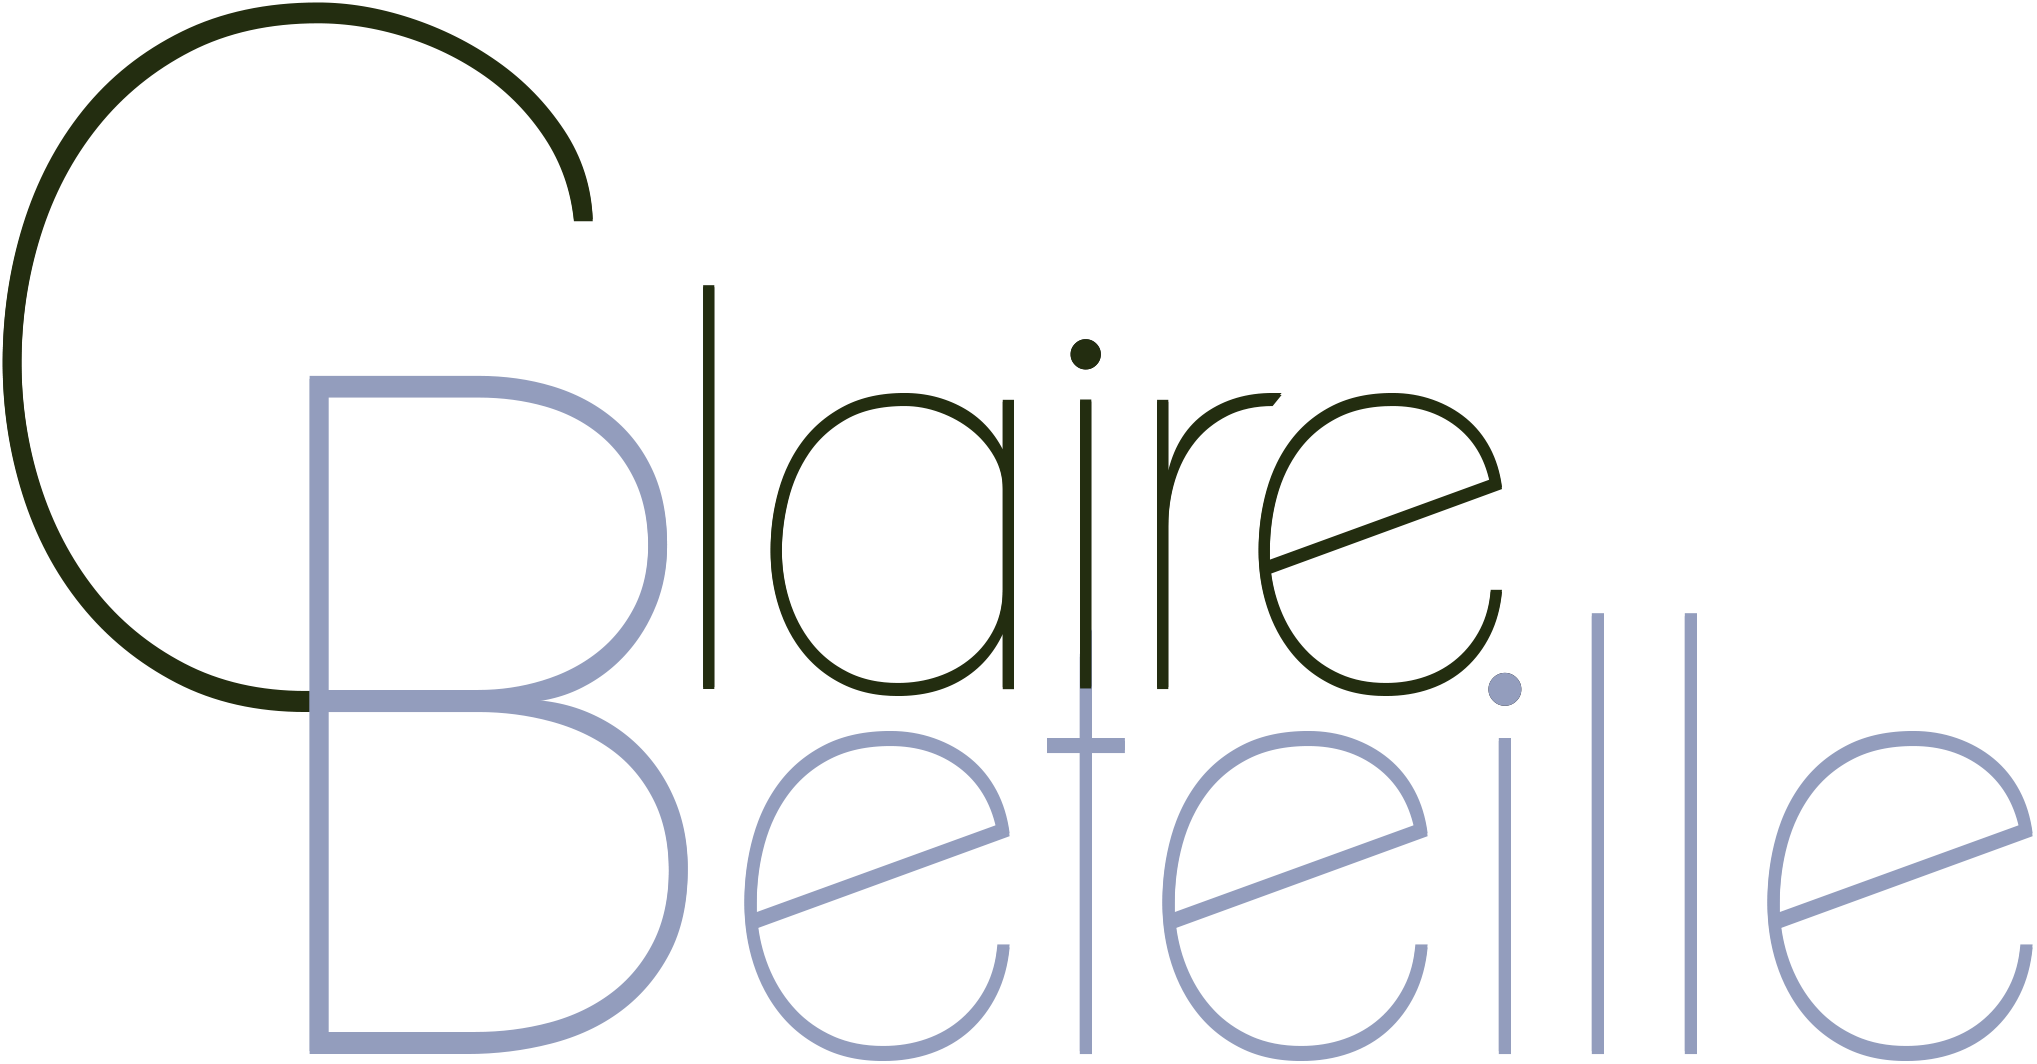 Claire Béteille